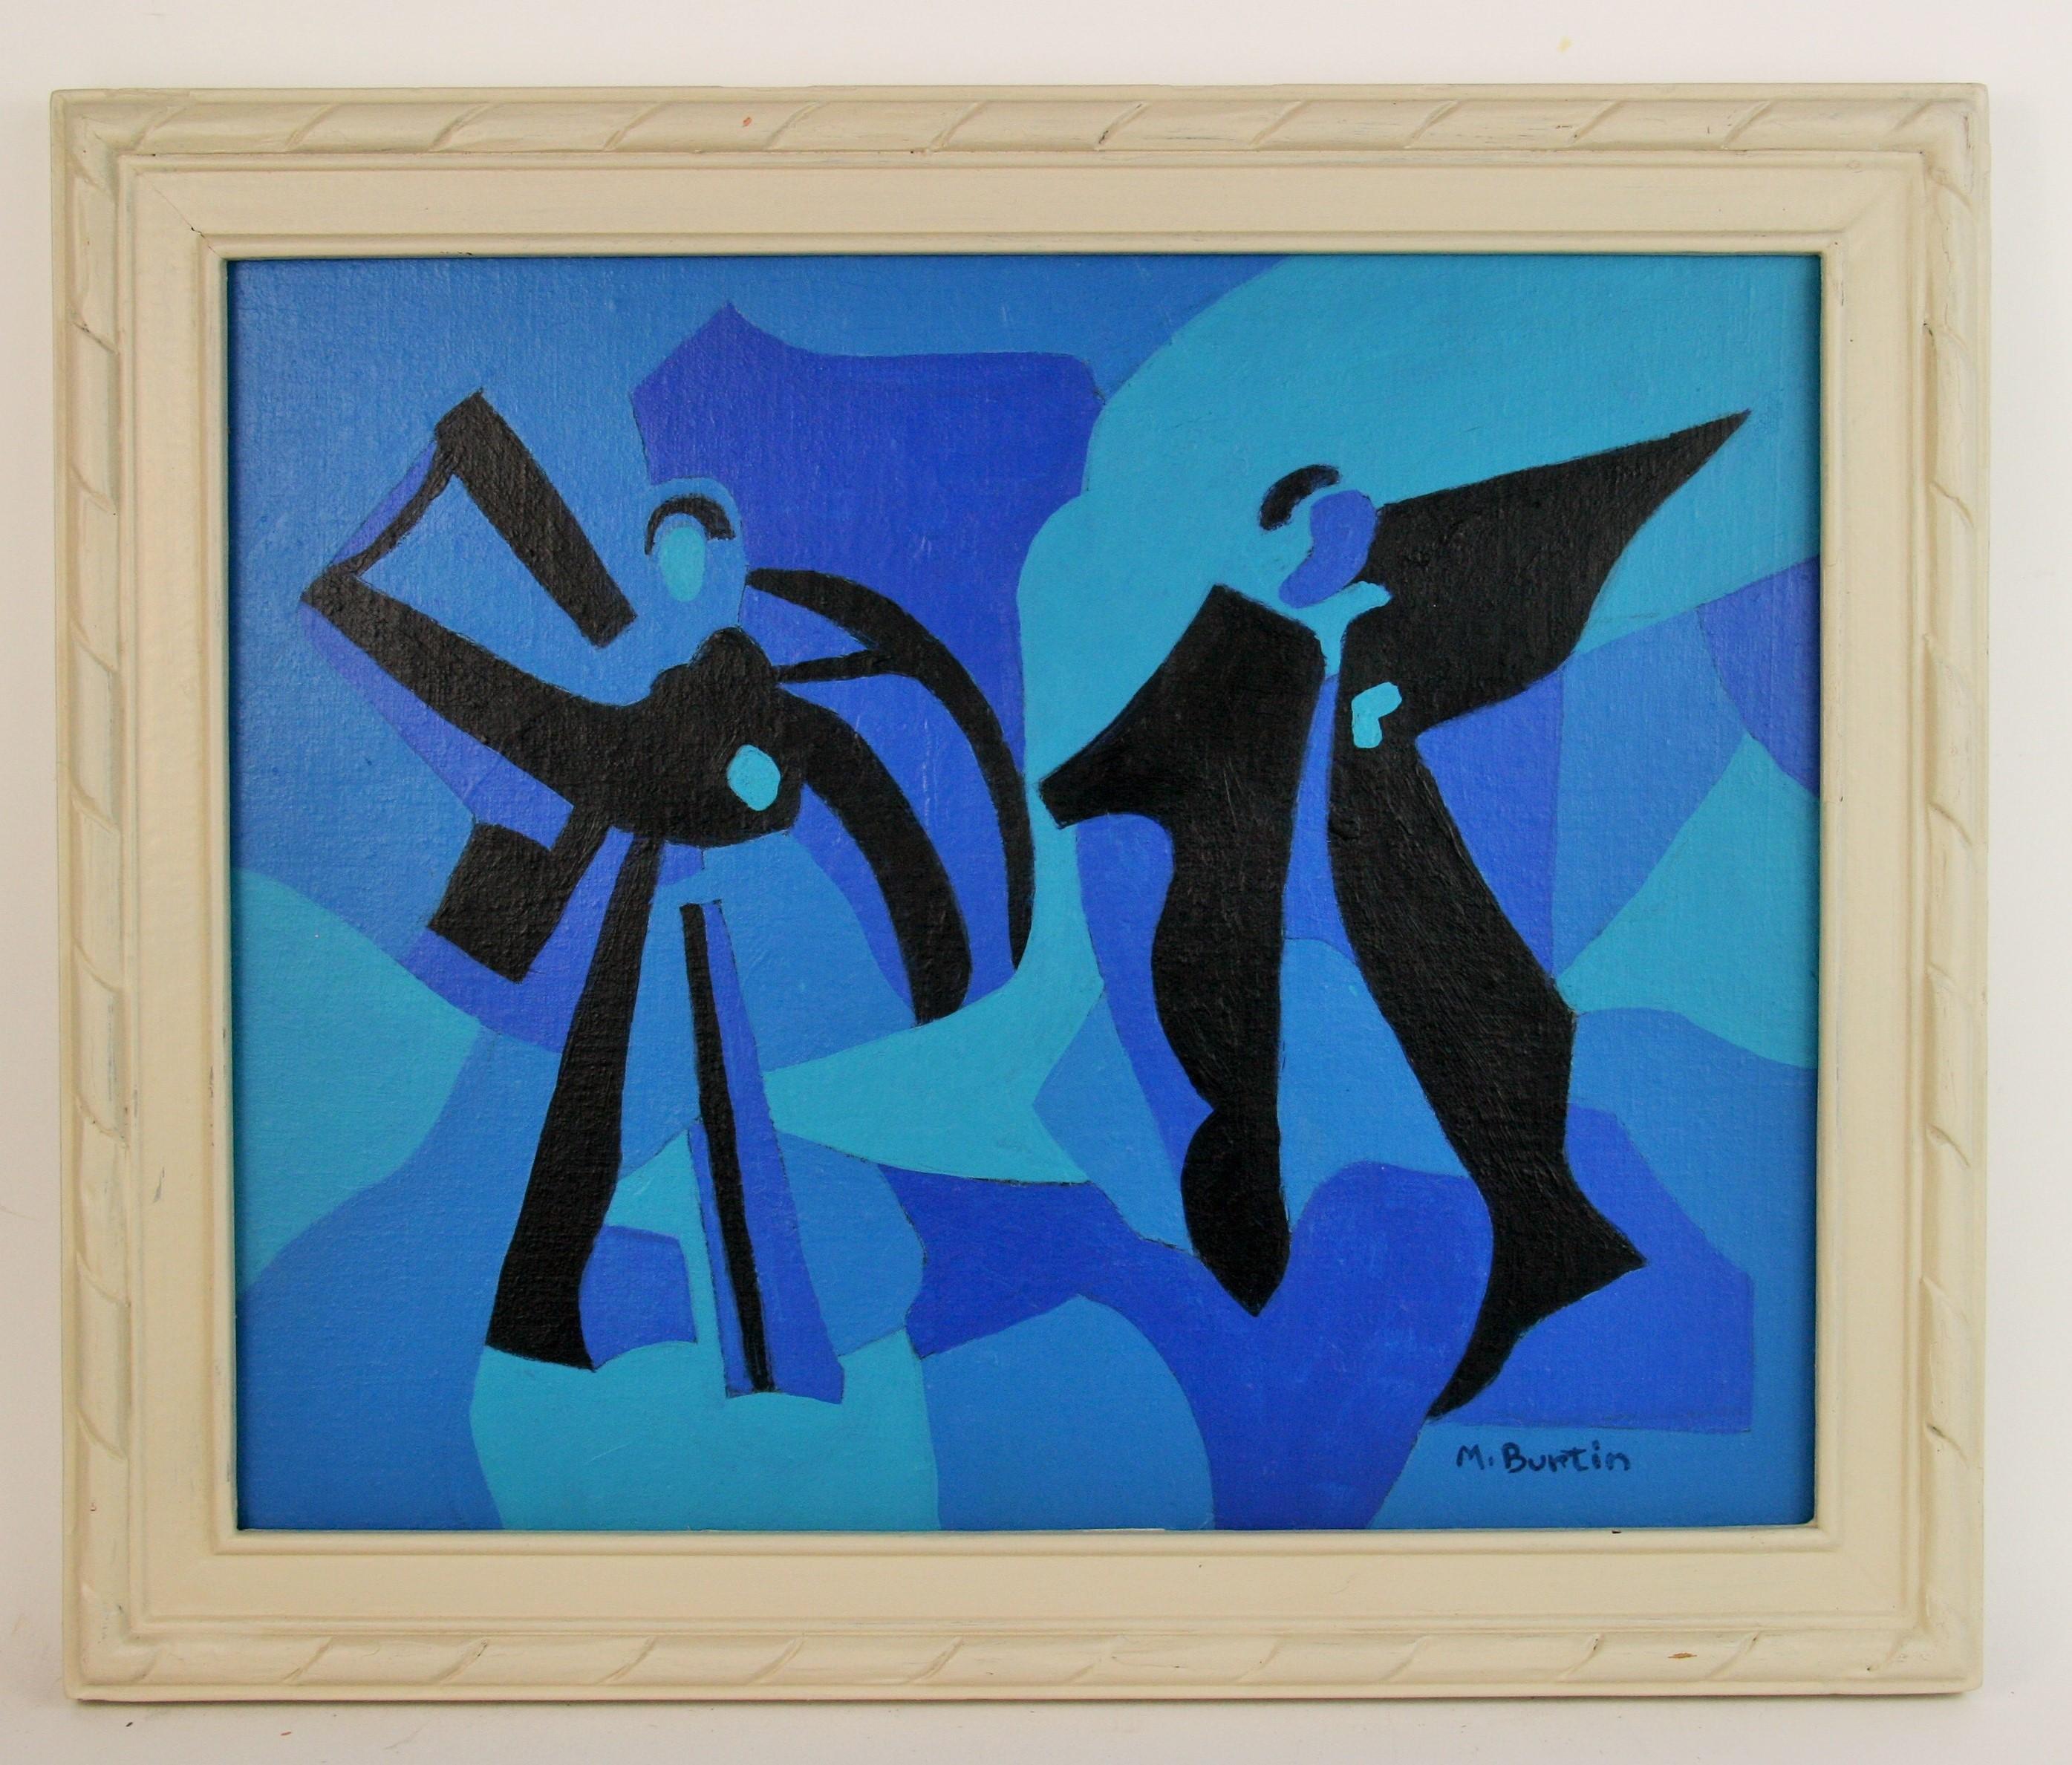 5-3311  Peinture figurative abstraite
Dans un cadre en bois peint à la main
Taille de l'image 12x15